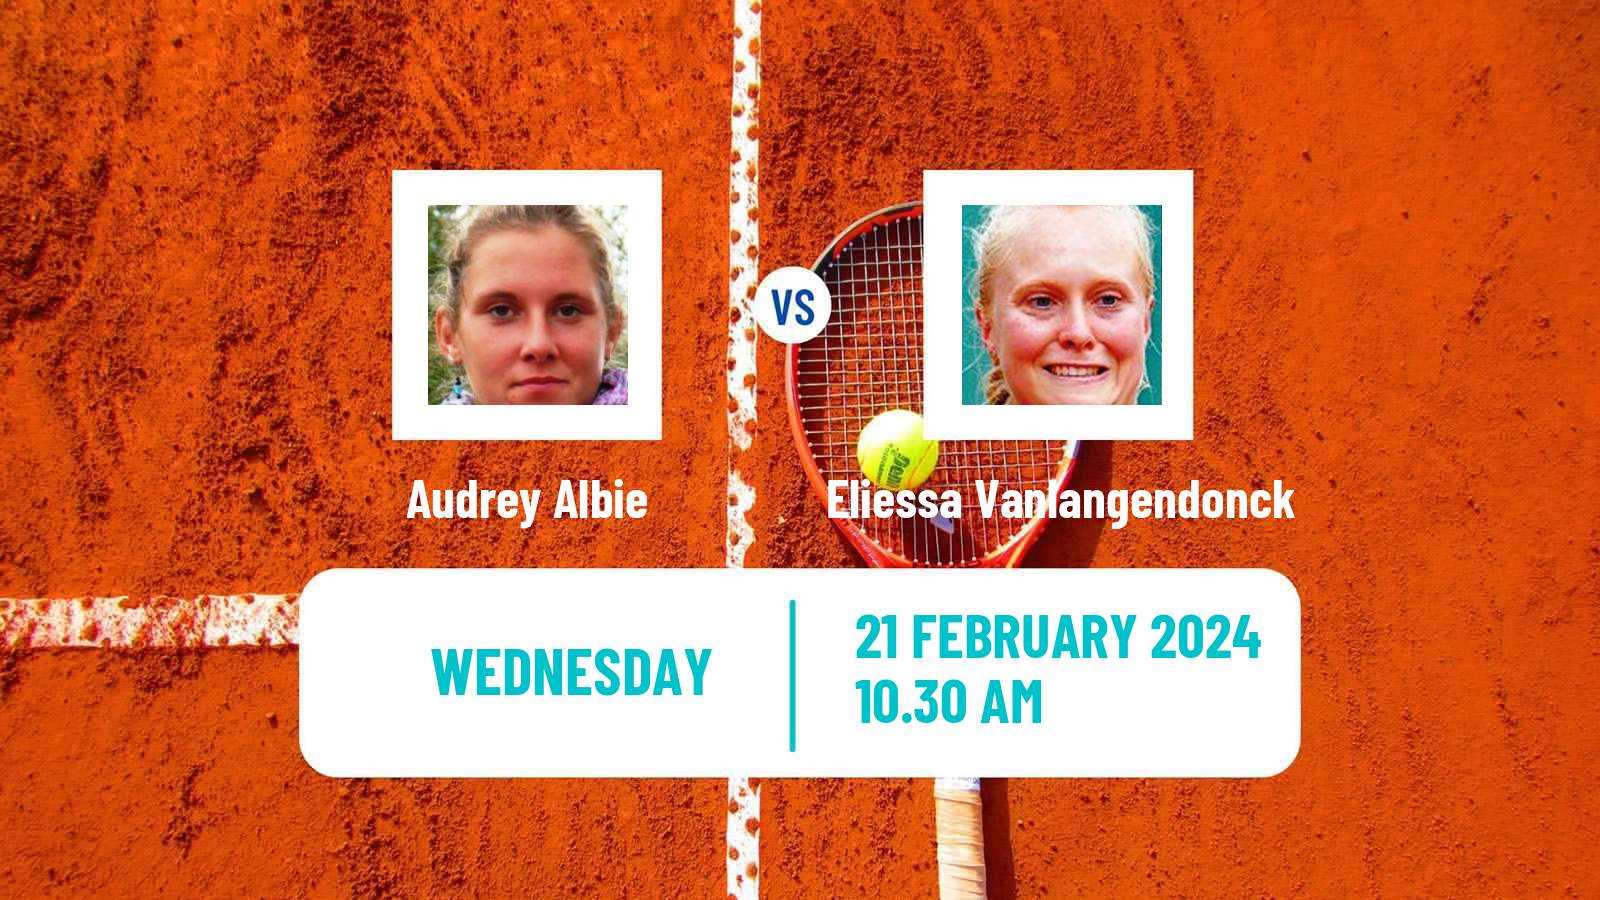 Tennis ITF W15 Monastir 6 Women Audrey Albie - Eliessa Vanlangendonck